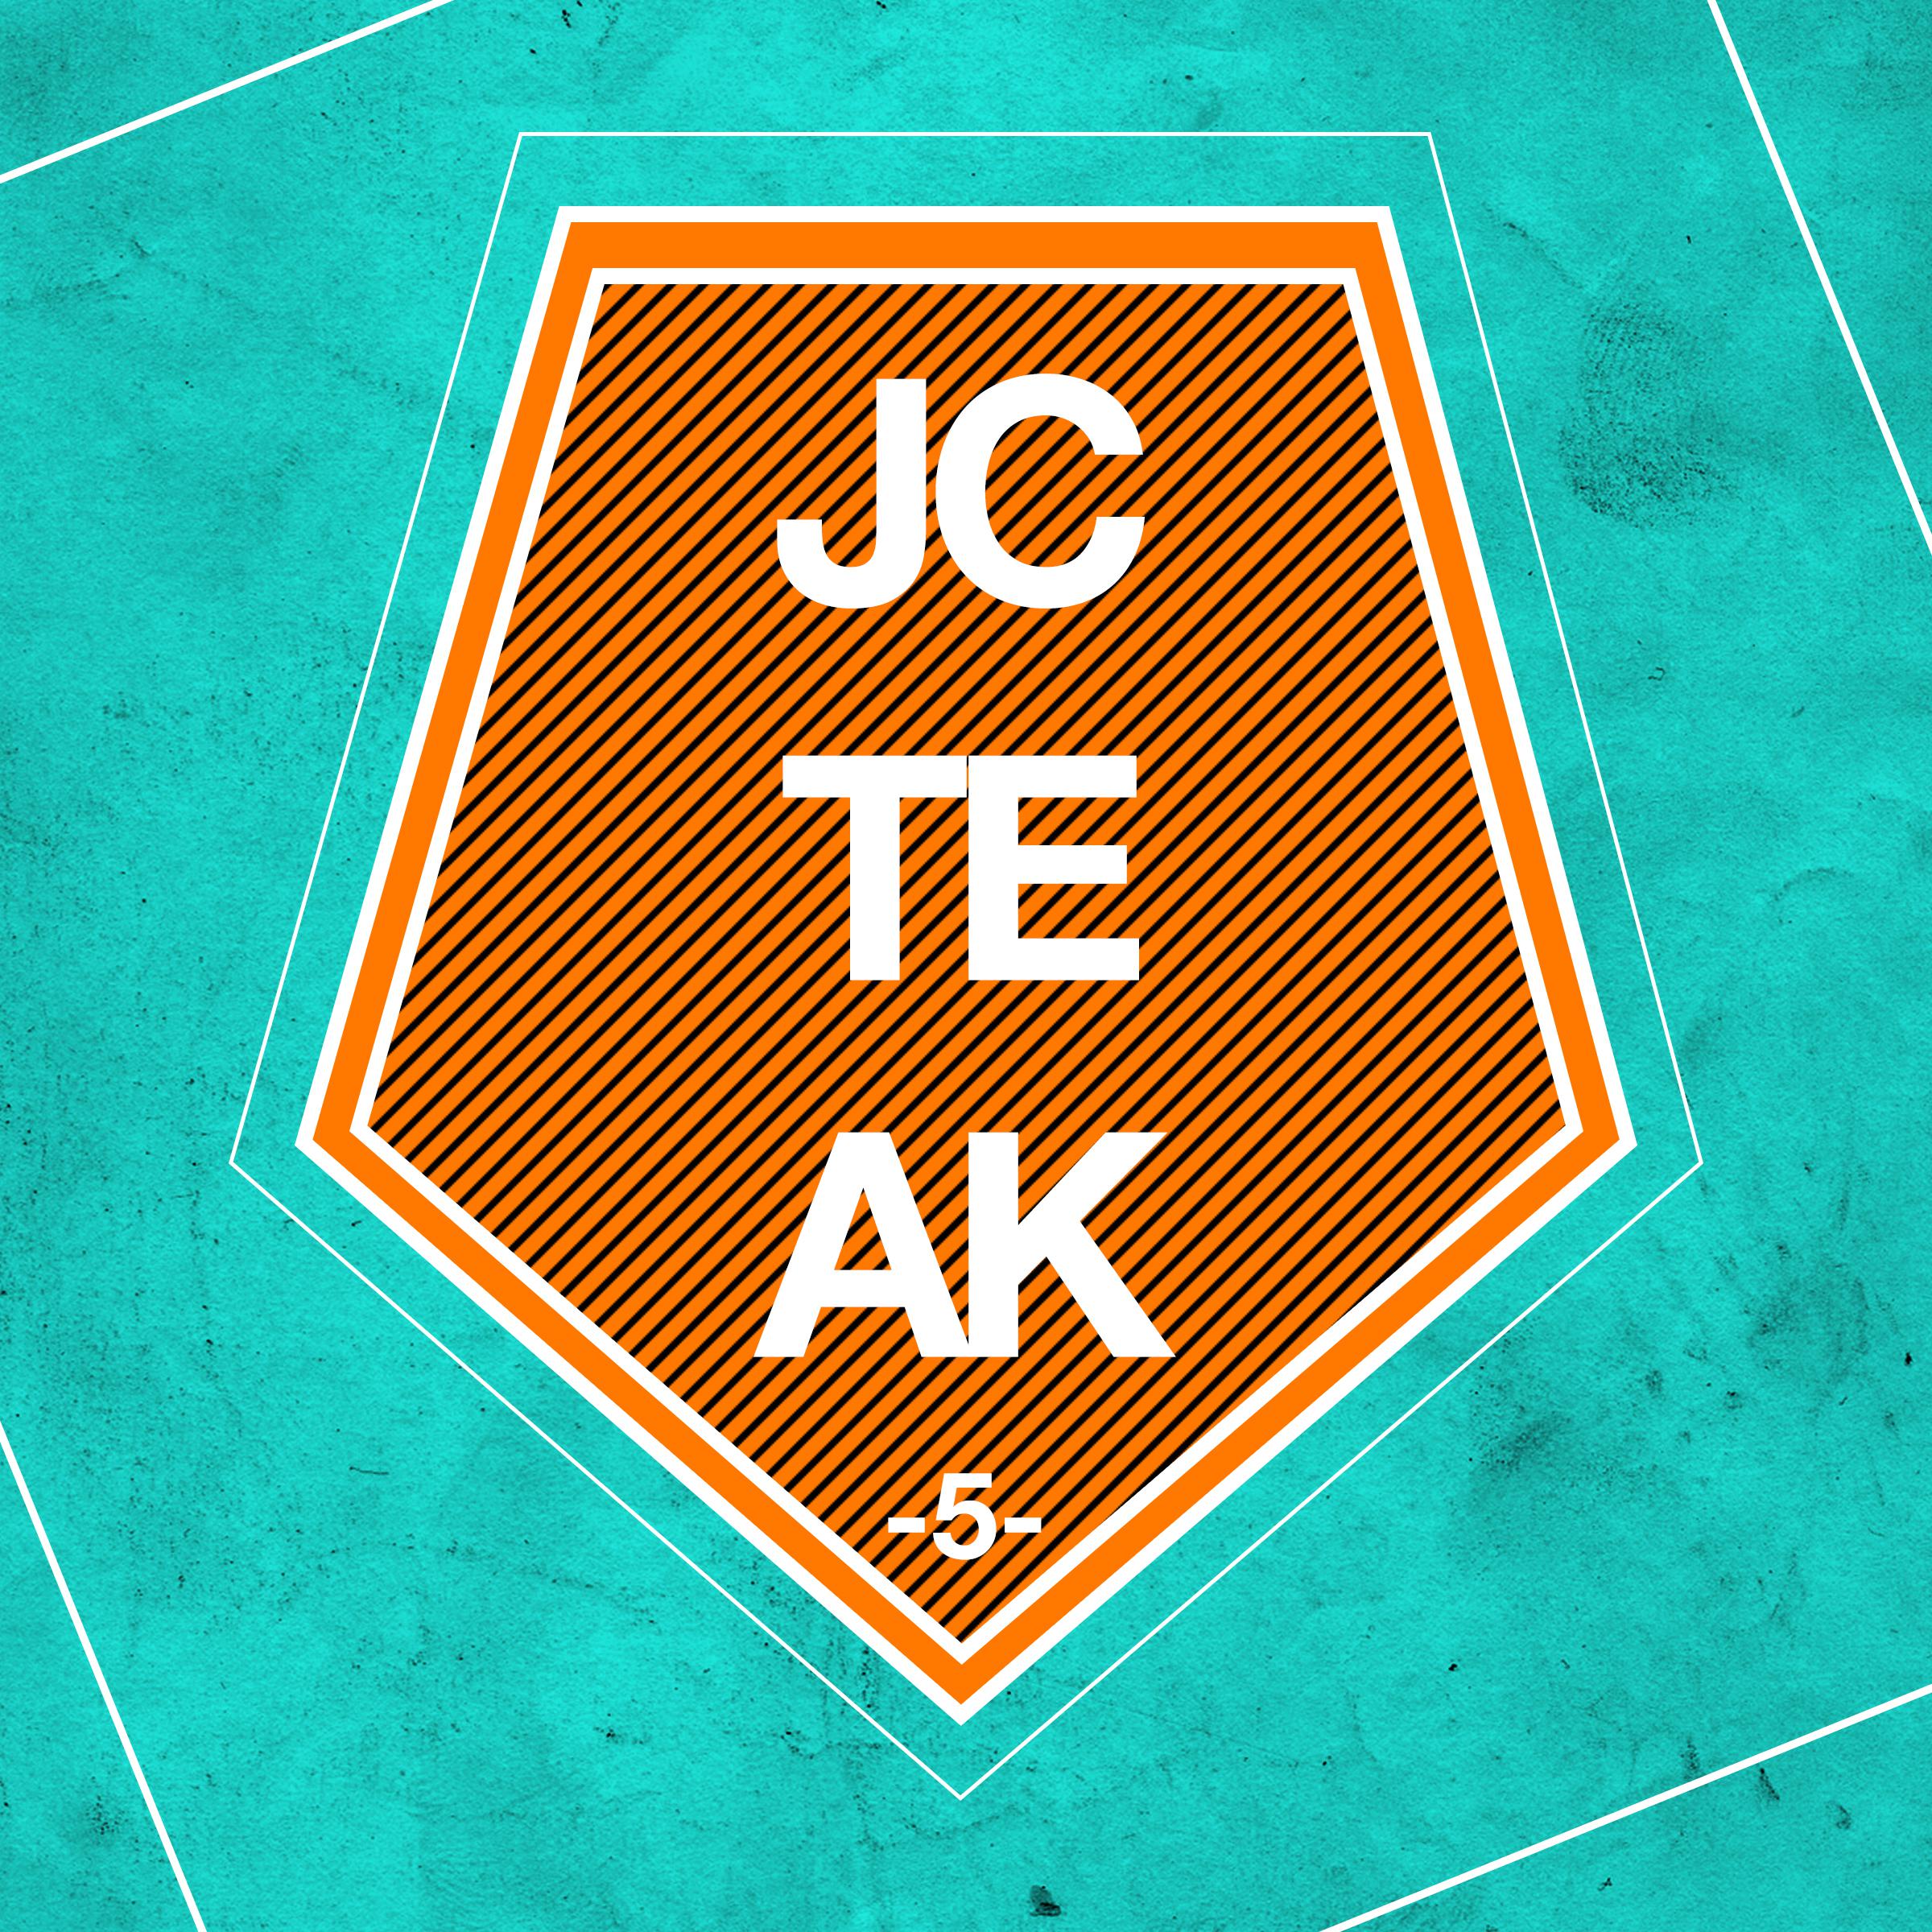 JCTEAK, Vol. 5